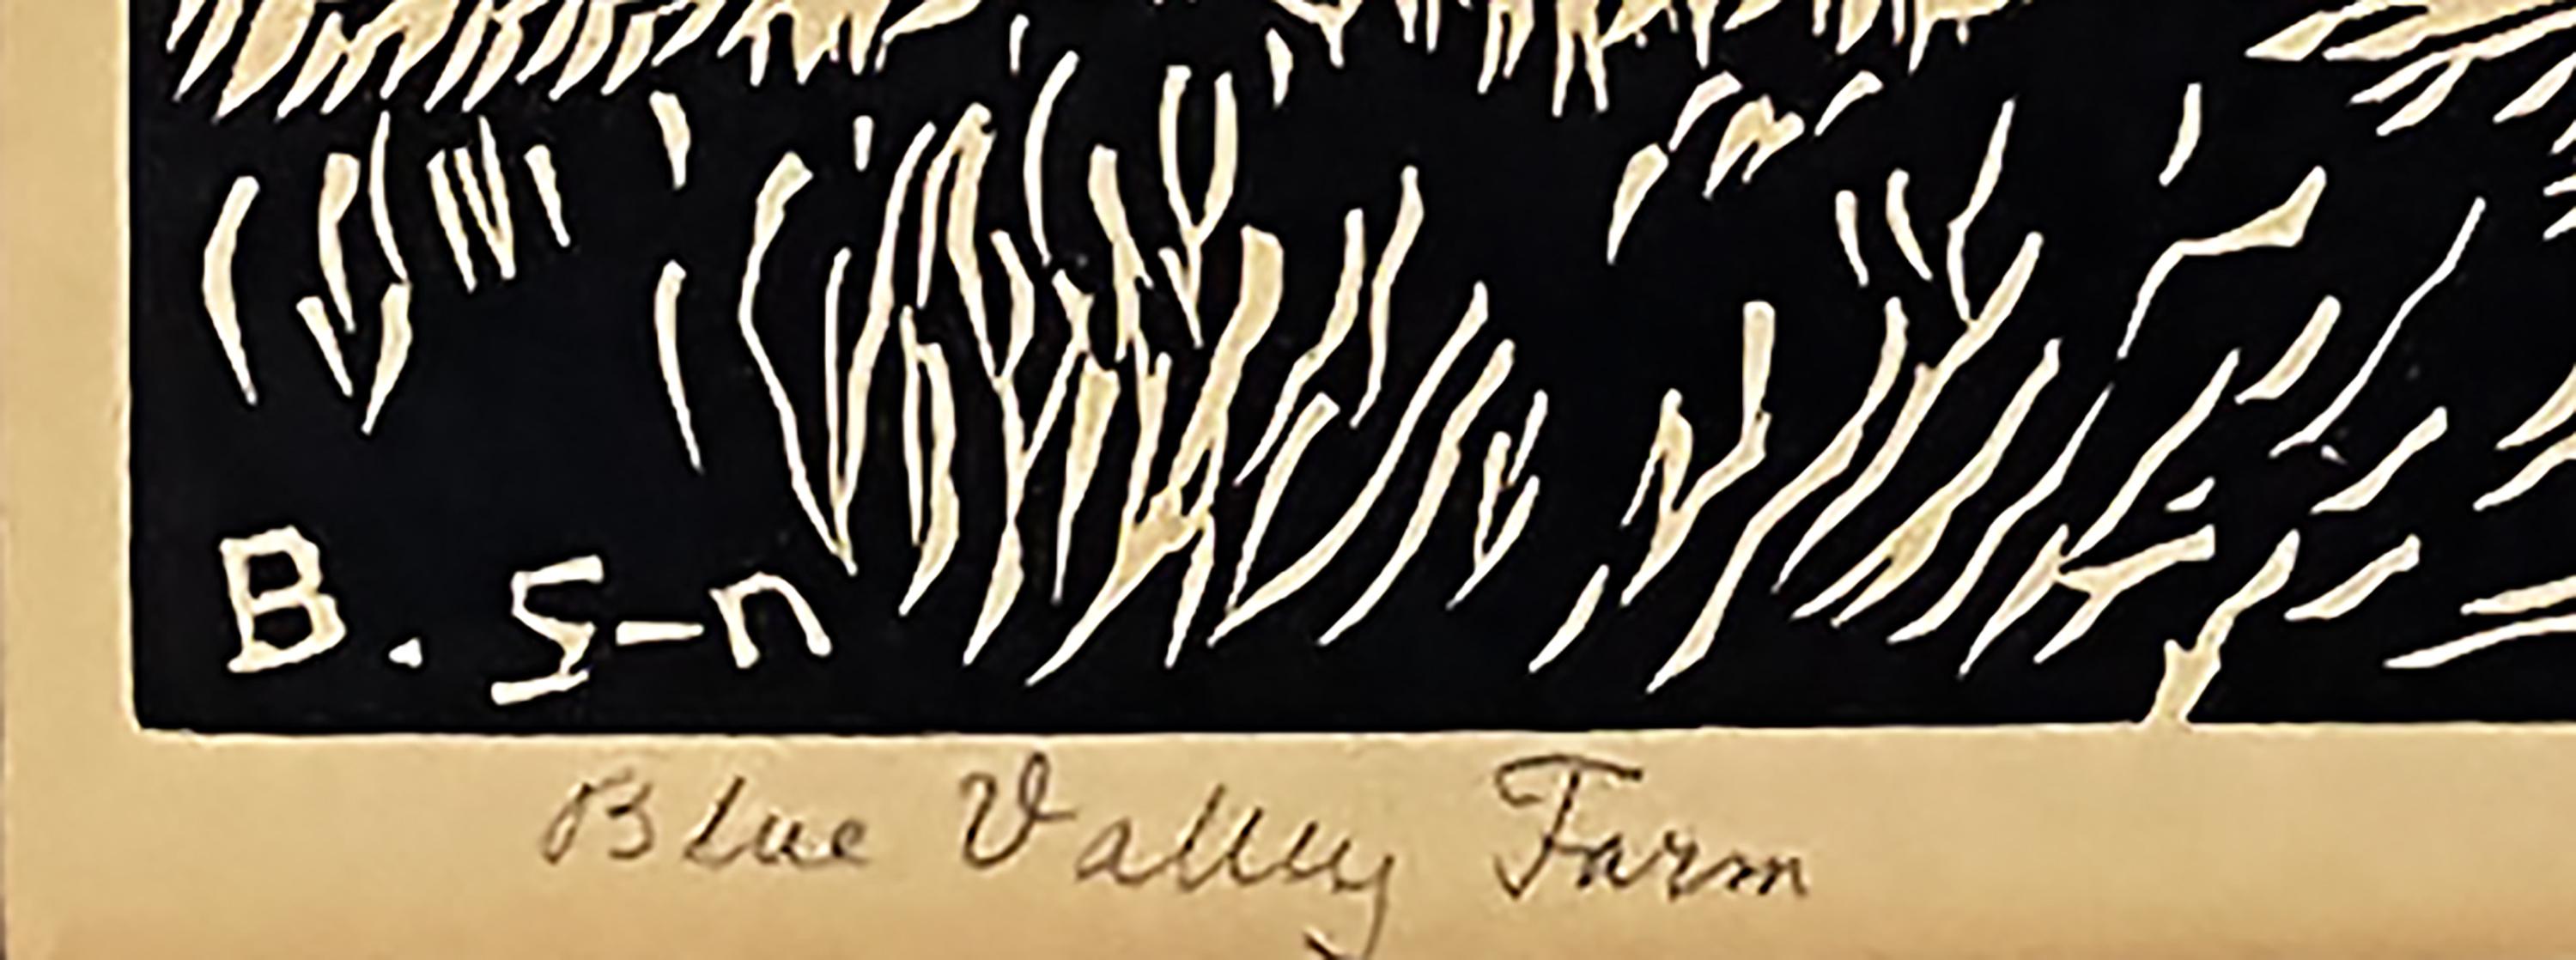 Blue Valley Farm - Black Print by Birger Sandzen